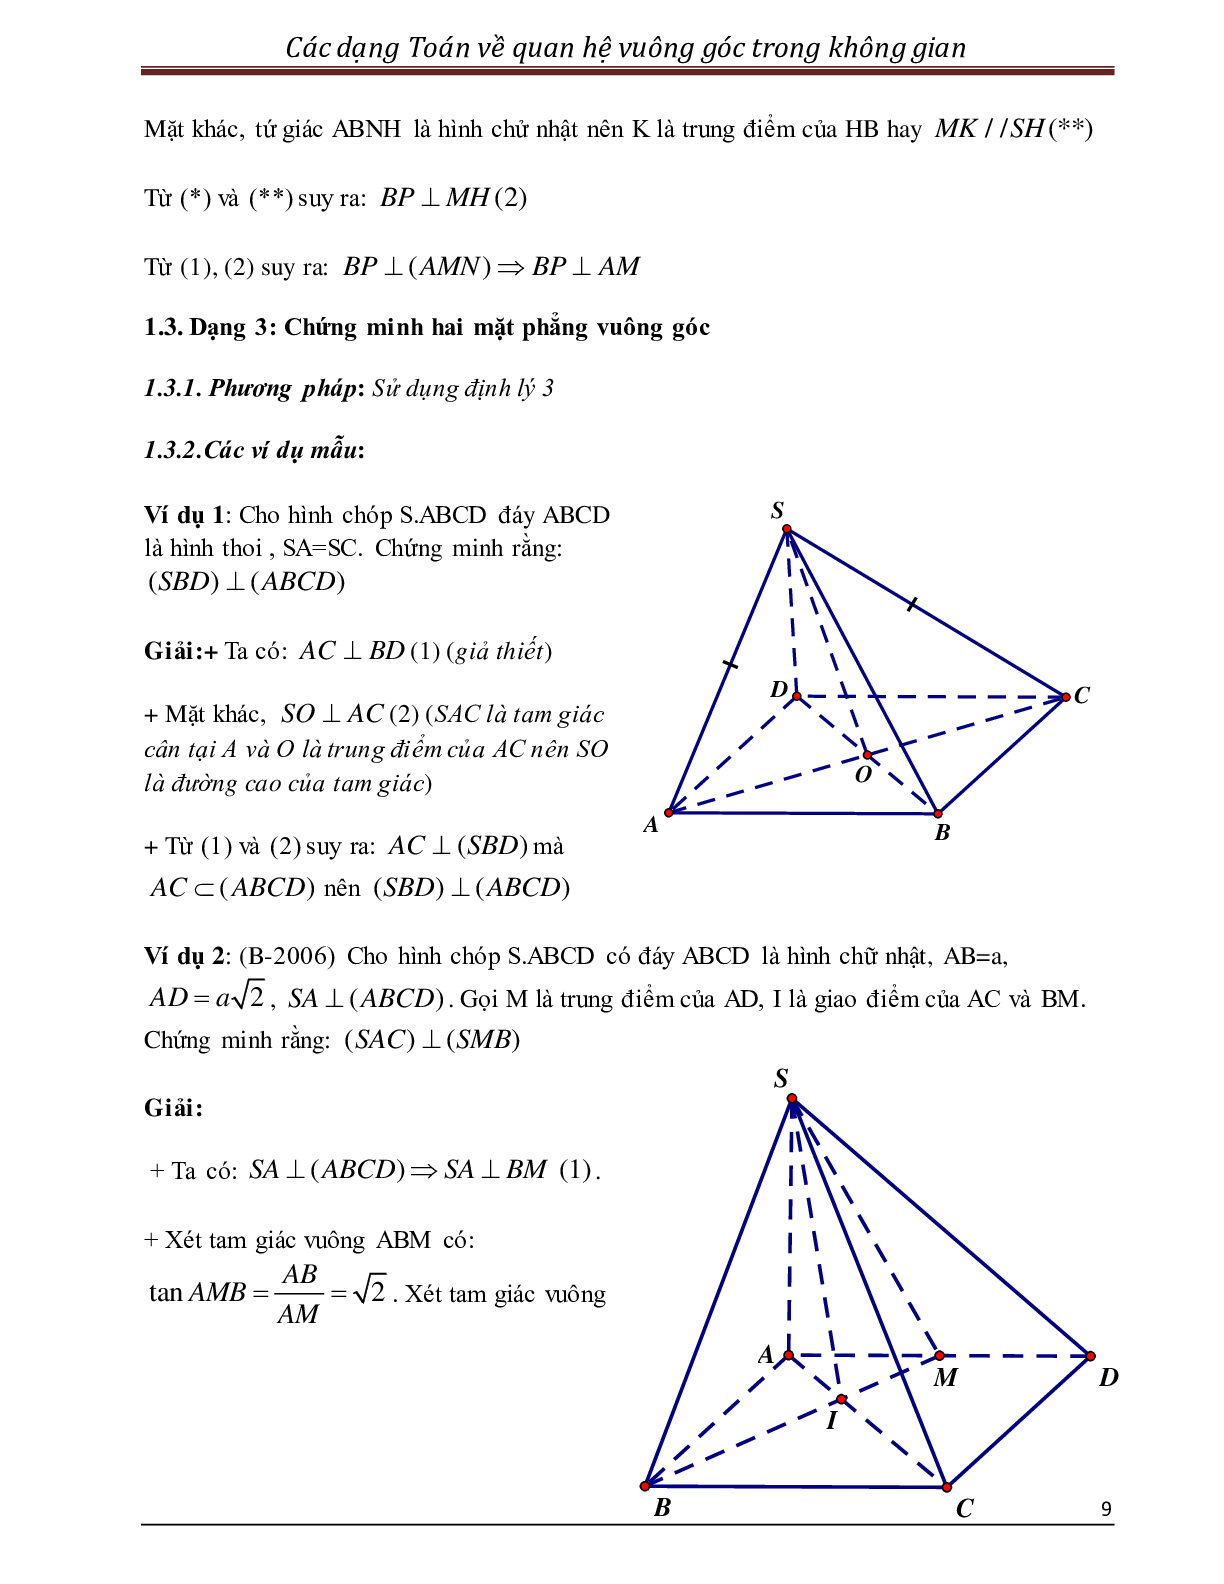 Các dạng toán quan hệ vuông góc trong không gian (trang 9)